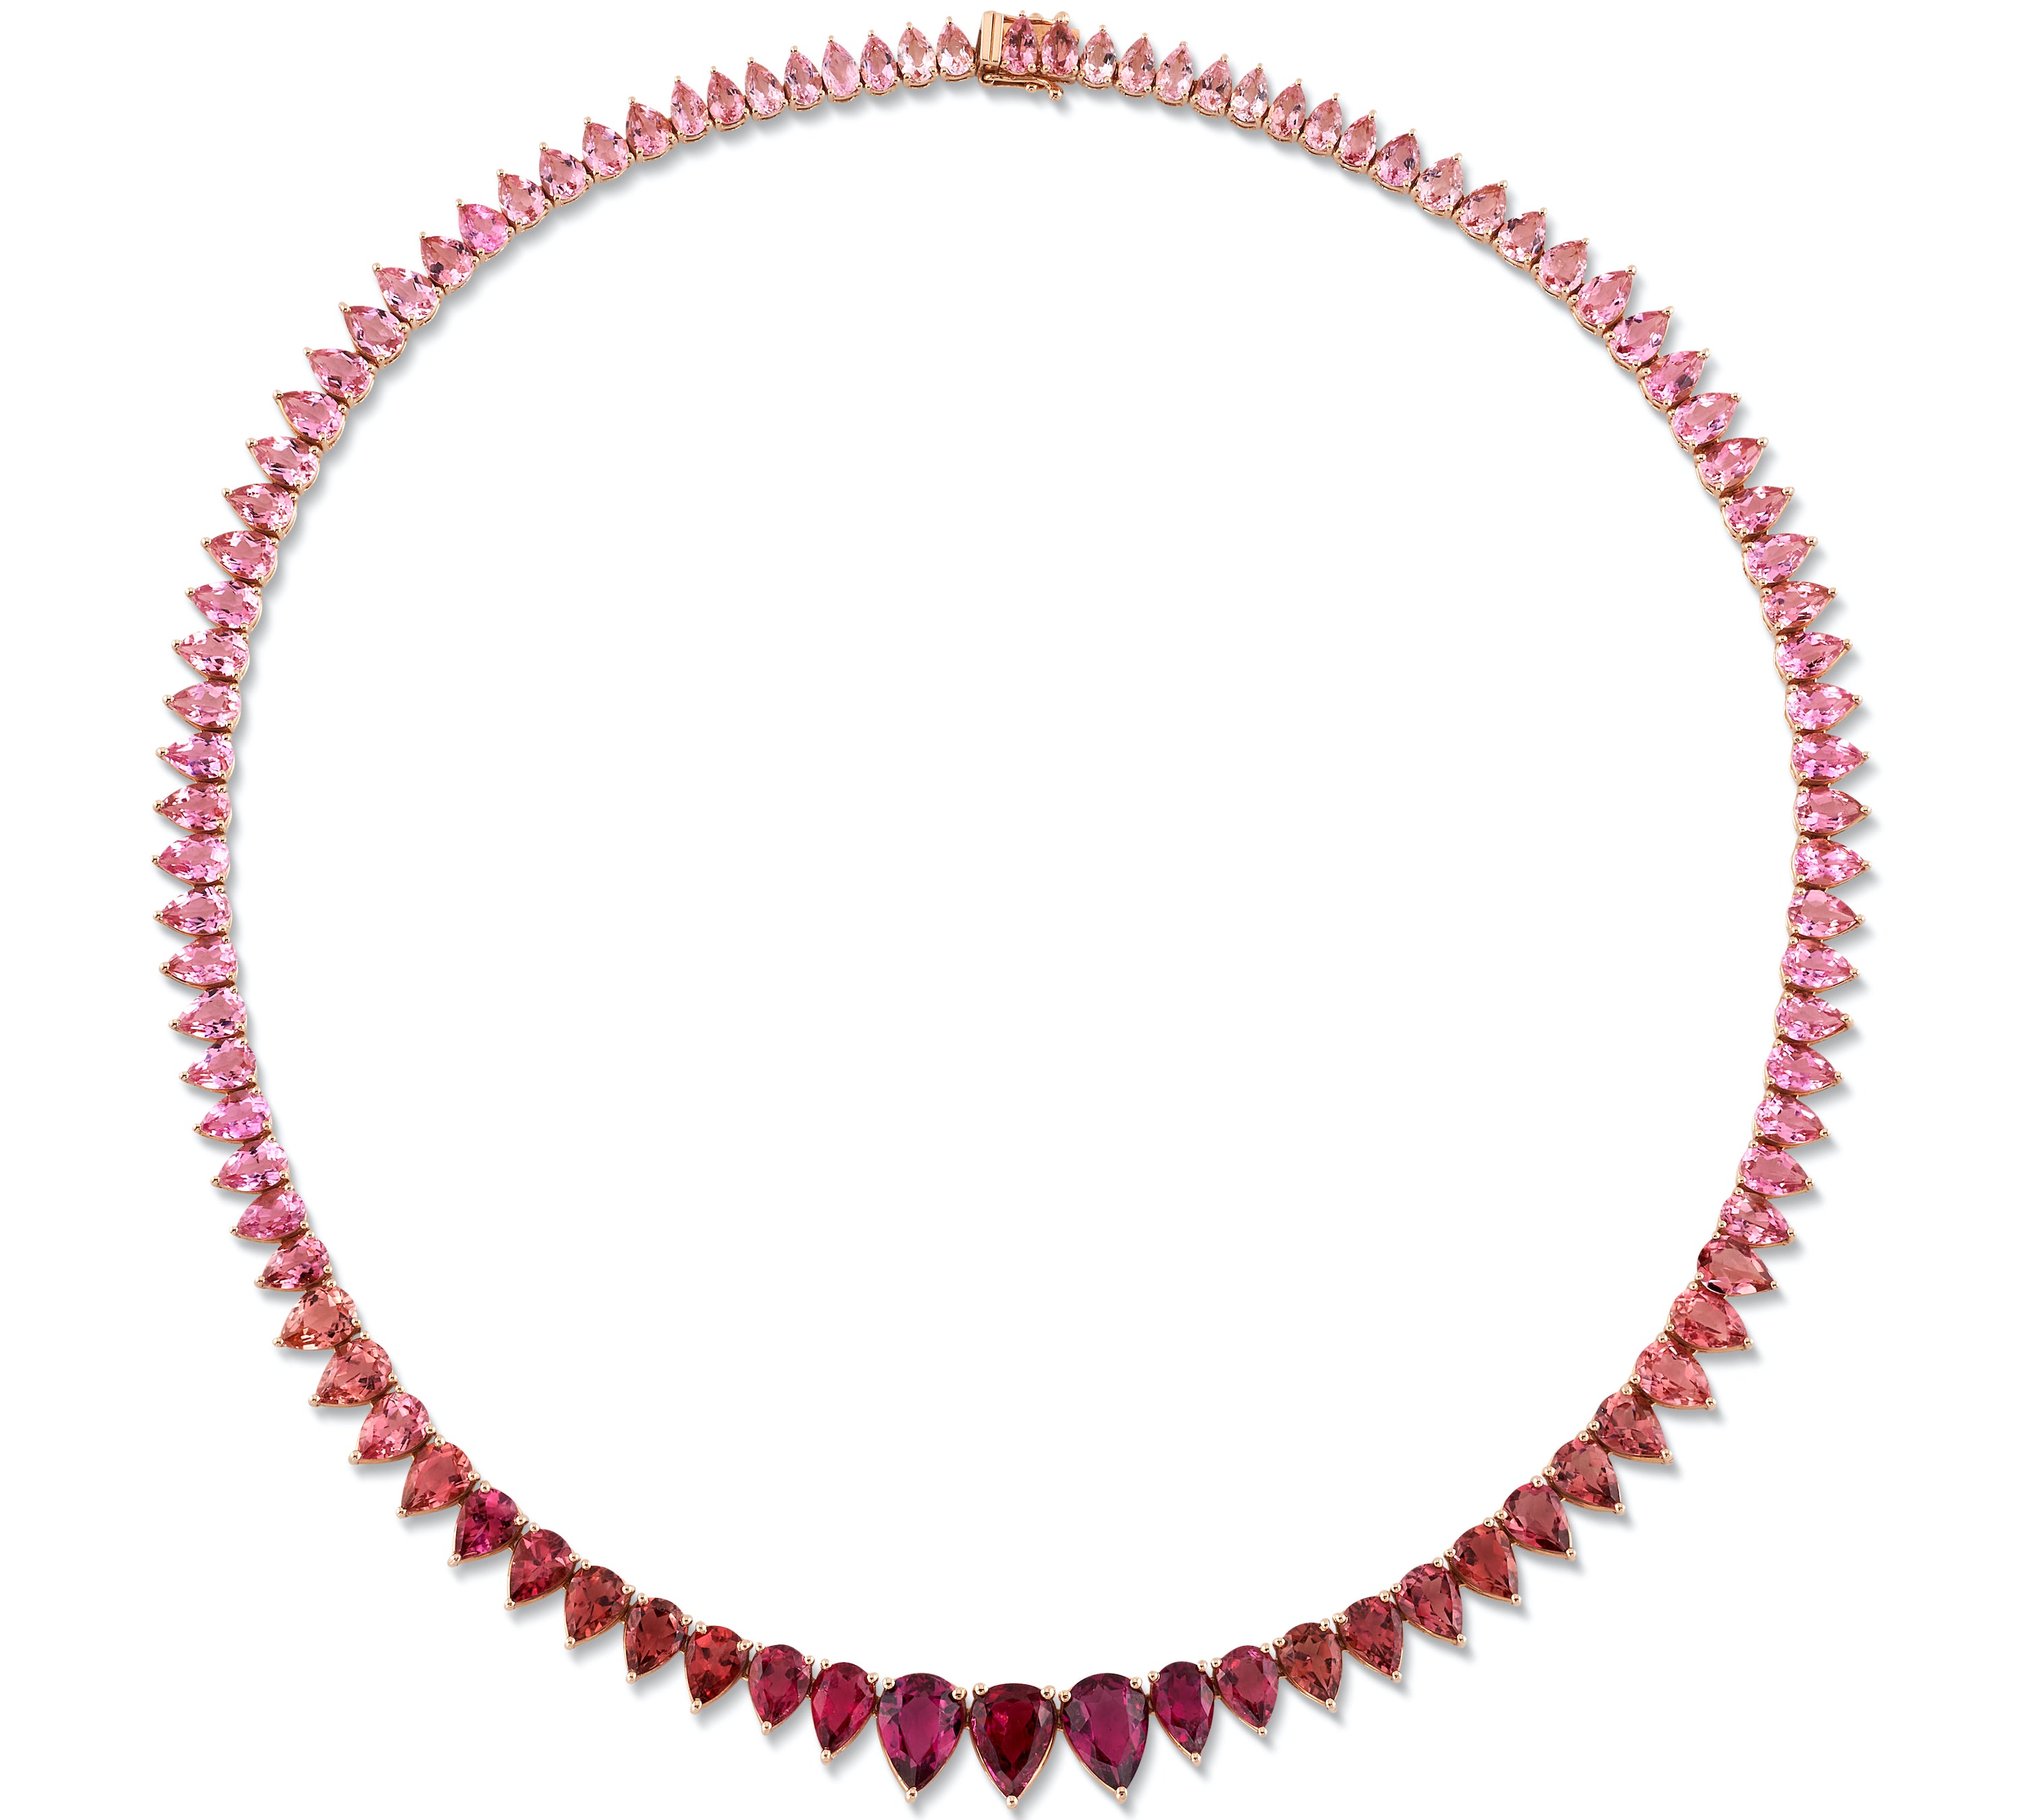 The Ombré Tourmaline Necklace Collar Roseark Jewelry   